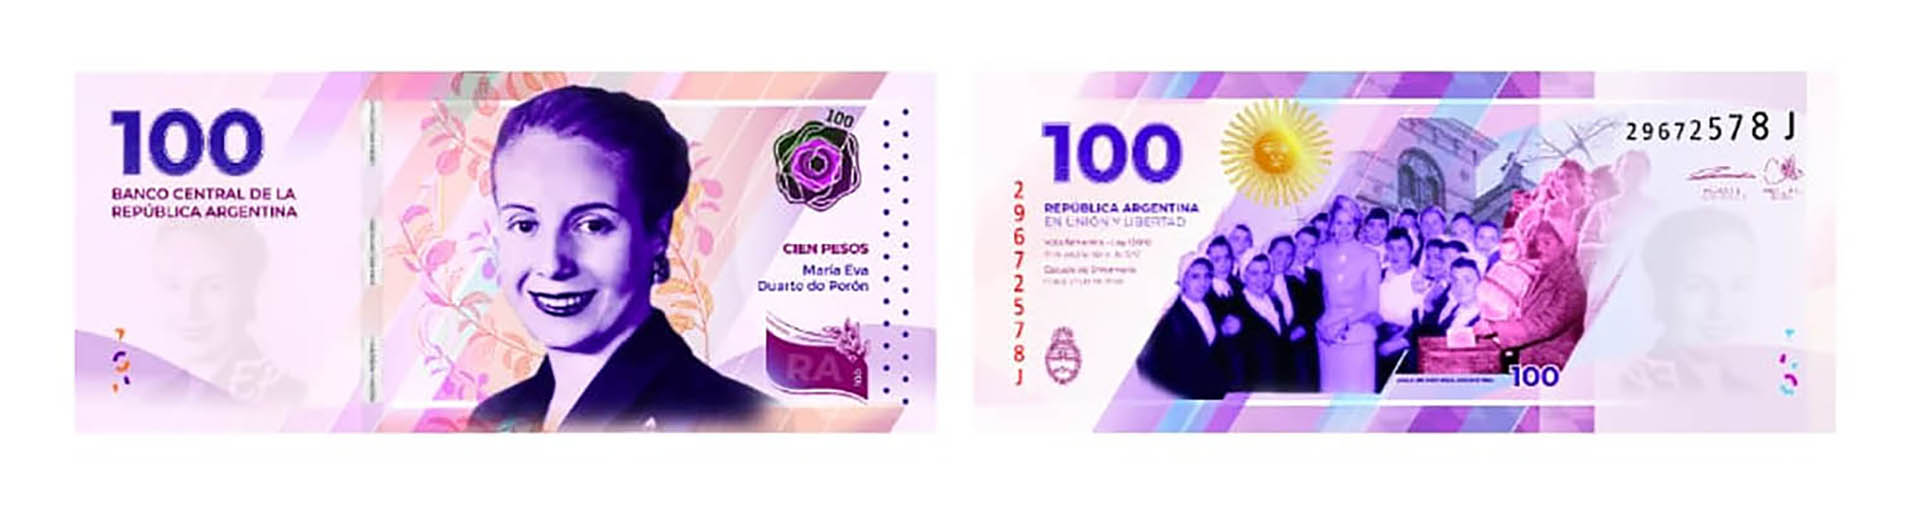 María Eva Duarte de Perón, en el renovado billete de $100 